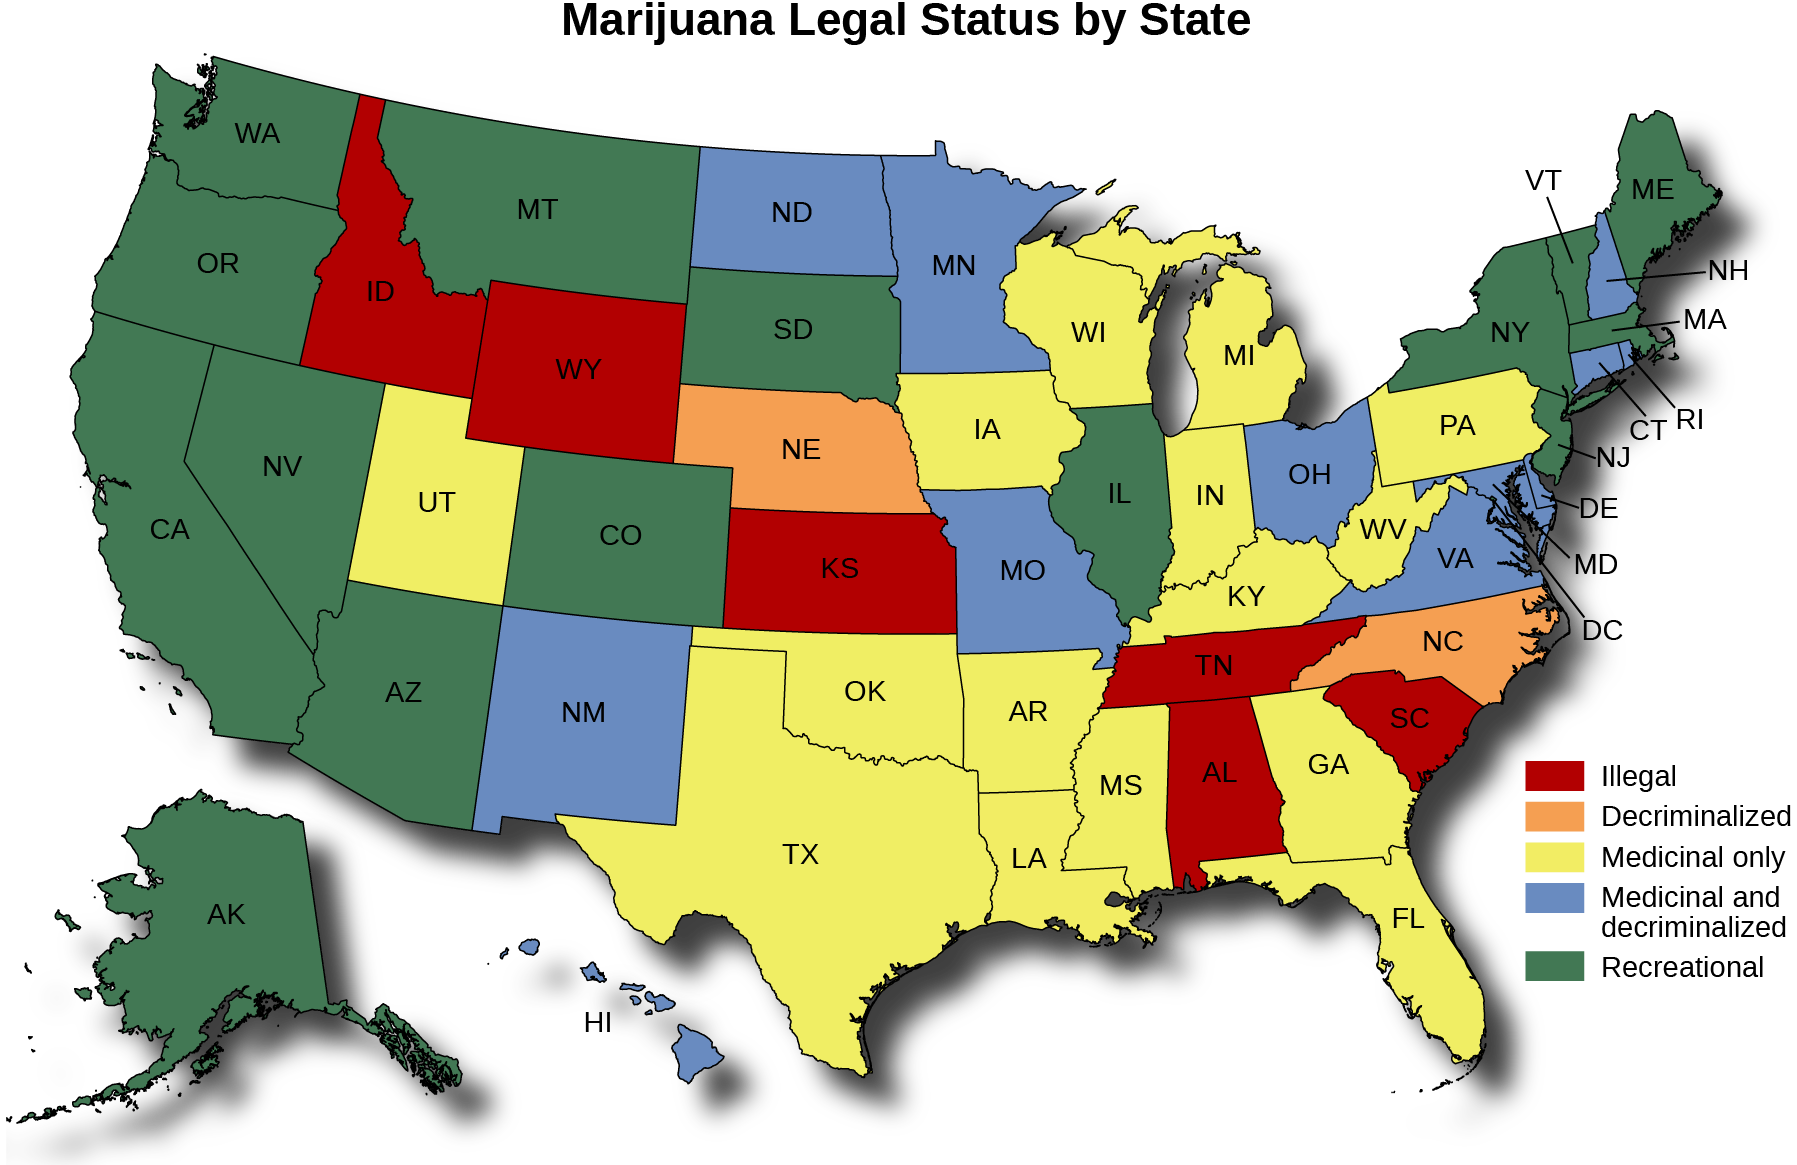 标题为 “各州大麻法律地位” 的美国地图。 该地图显示了在哪些州大麻是非法的、非刑事化的、仅限药用的、药用和非刑事化的，以及娱乐性的。 在爱达荷州、怀俄明州、南达科他州、堪萨斯州、德克萨斯州、爱荷华州、威斯康星州、印第安纳州、肯塔基州、田纳西州、阿拉巴马州、乔治亚州、弗吉尼亚州和南卡罗来纳州 内布拉斯加州、密西西比州和北卡罗来纳州将大麻合法化。 大麻仅在蒙大拿州、犹他州、亚利桑那州、新墨西哥州、北达科他州、俄克拉荷马州、阿肯色州、路易斯安那州、佛罗里达州、西弗吉尼亚州、宾夕法尼亚州和新泽西州可用。 在明尼苏达州、密苏里州、伊利诺伊州、俄亥俄州、纽约州、特拉华州、马里兰州、哥伦比亚特区、新罕布什尔州、康涅狄格州和罗德岛州，大麻是药用的，已合法化。 在华盛顿、俄勒冈州、加利福尼亚州、内华达州、阿拉斯加、科罗拉多州、密歇根州、佛蒙特州、缅因州和马萨诸塞州，大麻